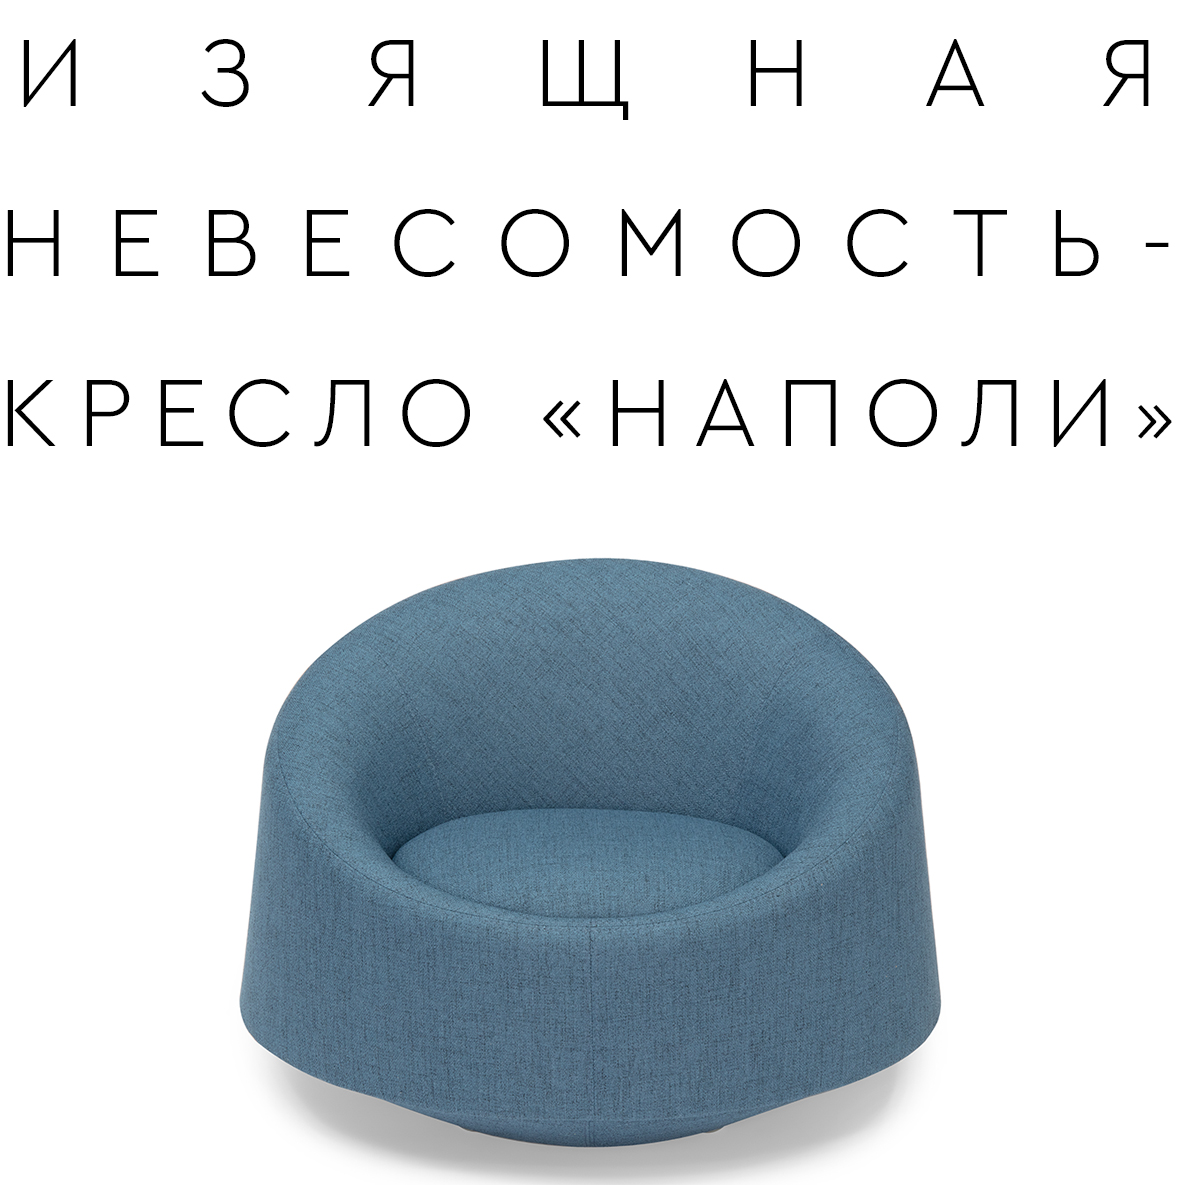 Новая модель кресла «НАПОЛИ»